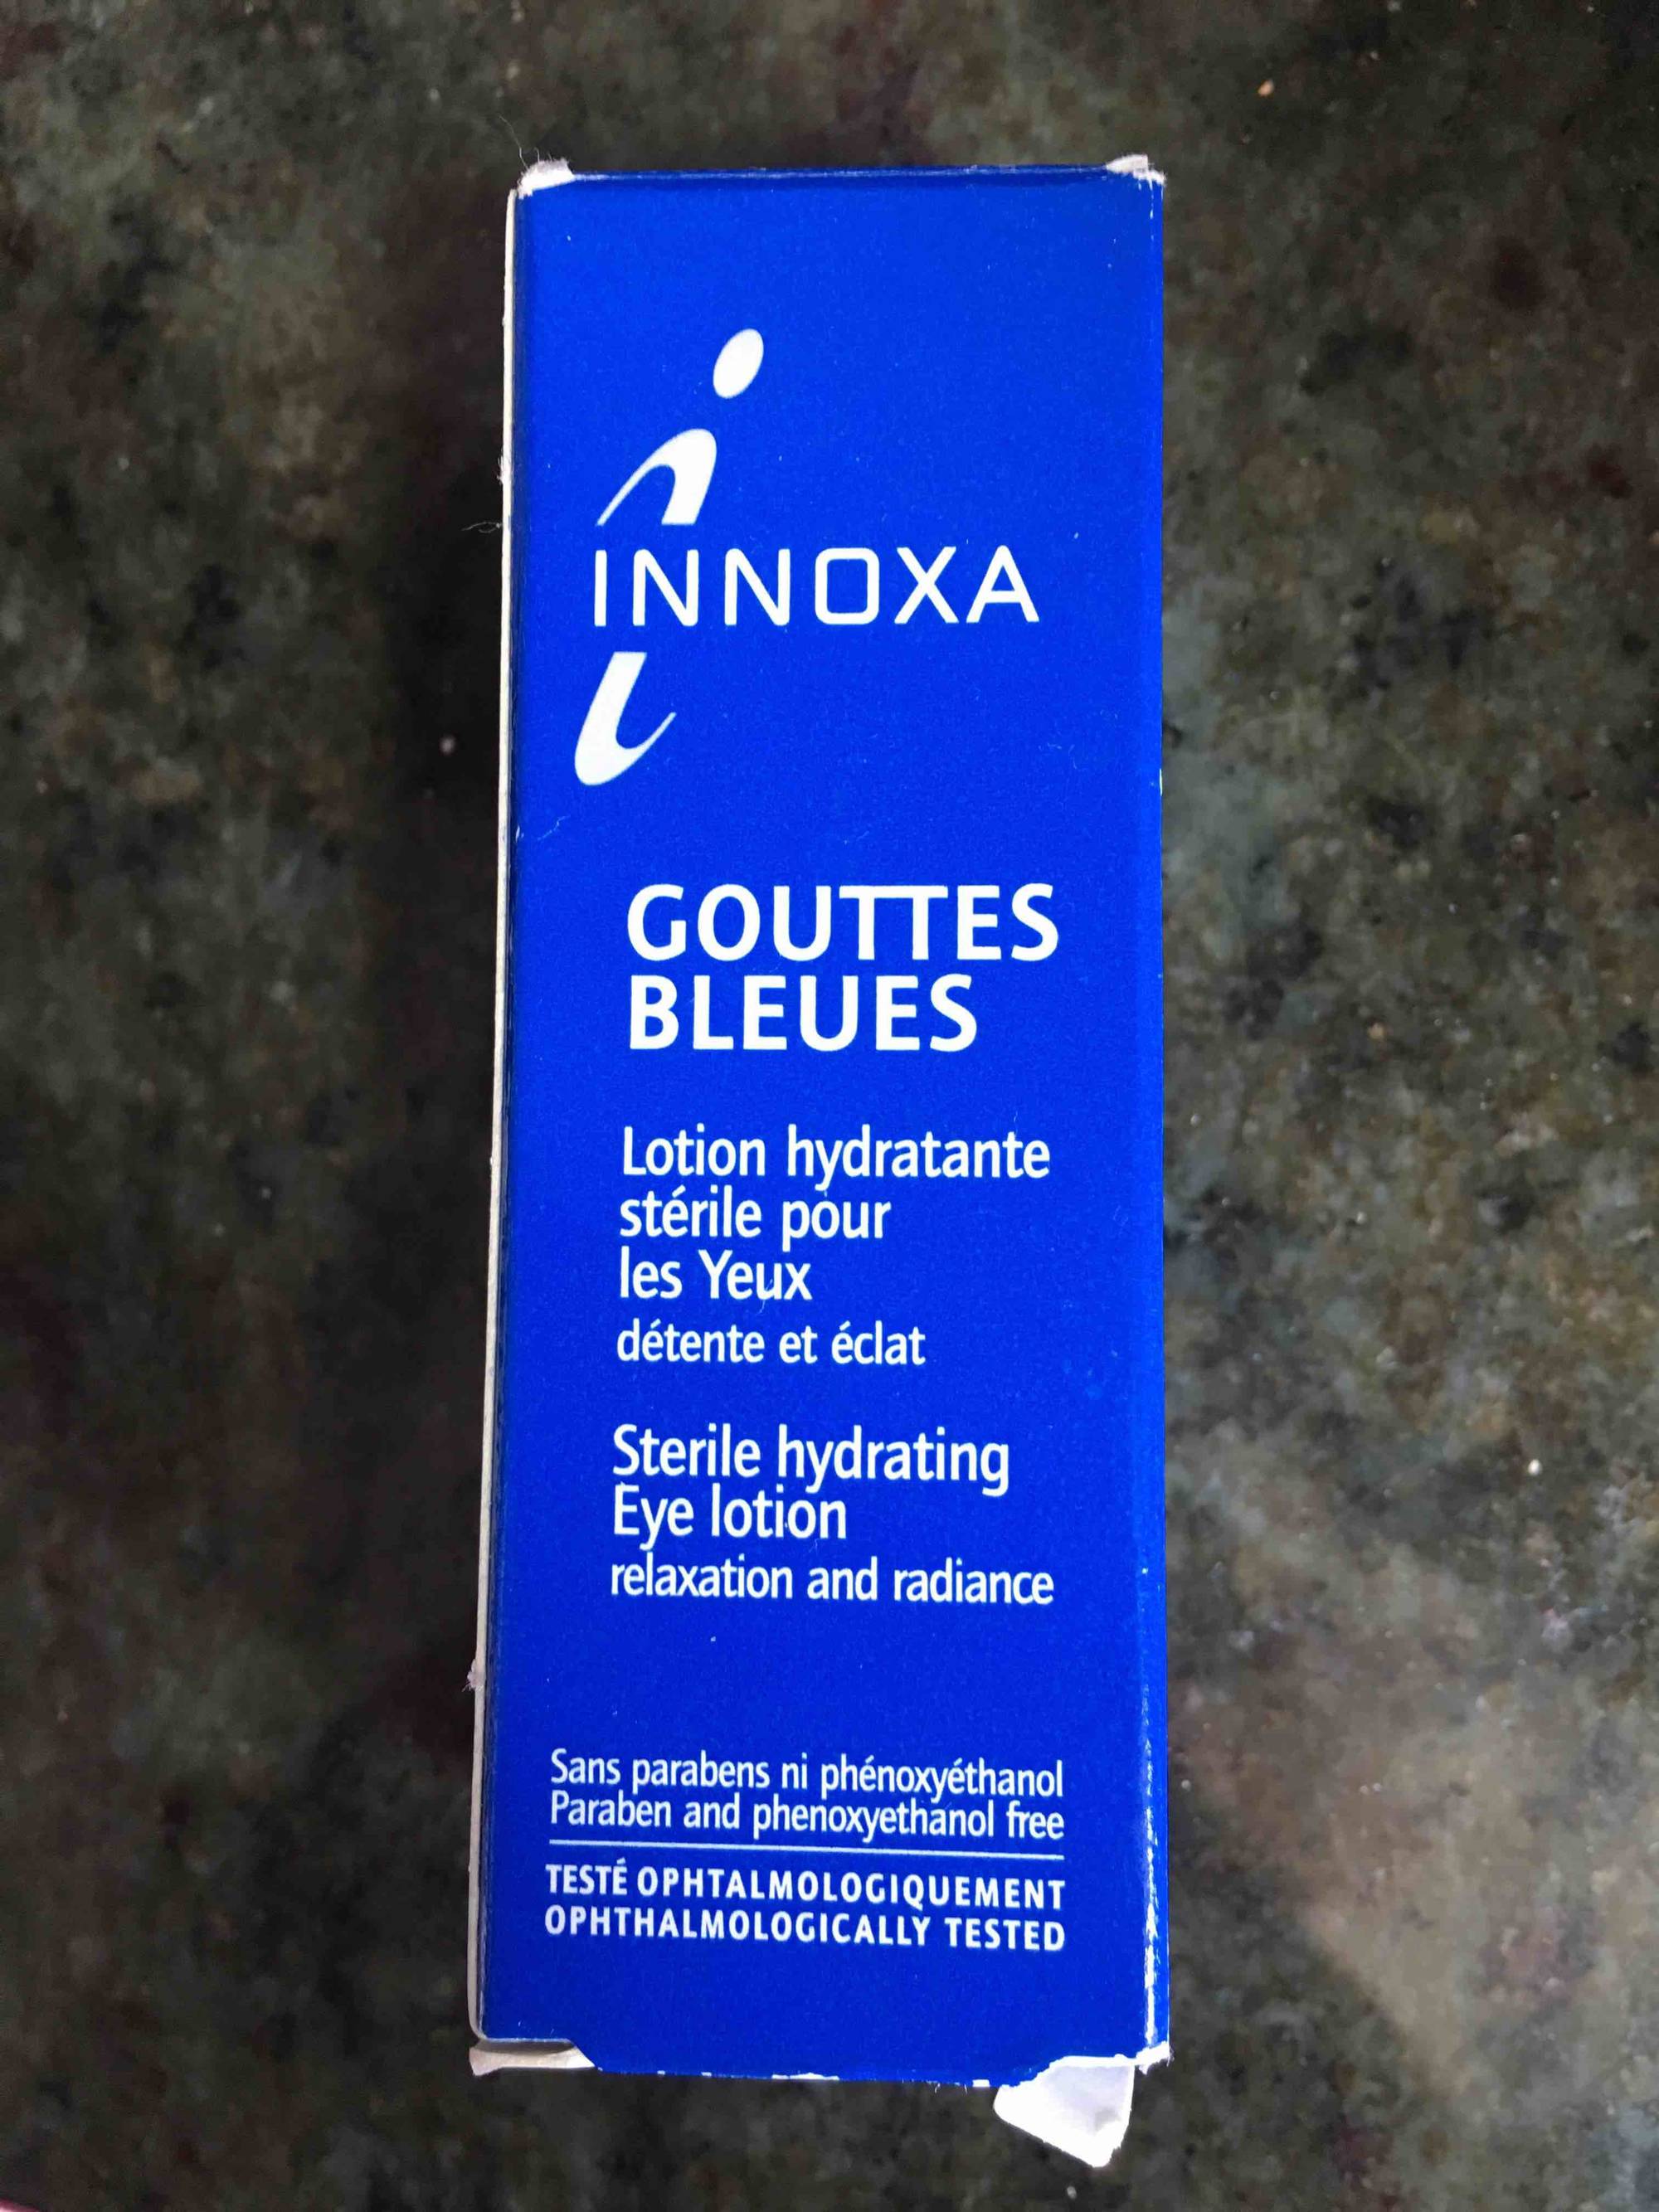 Composition INNOXA Gouttes bleues - Lotion hydratante pour les